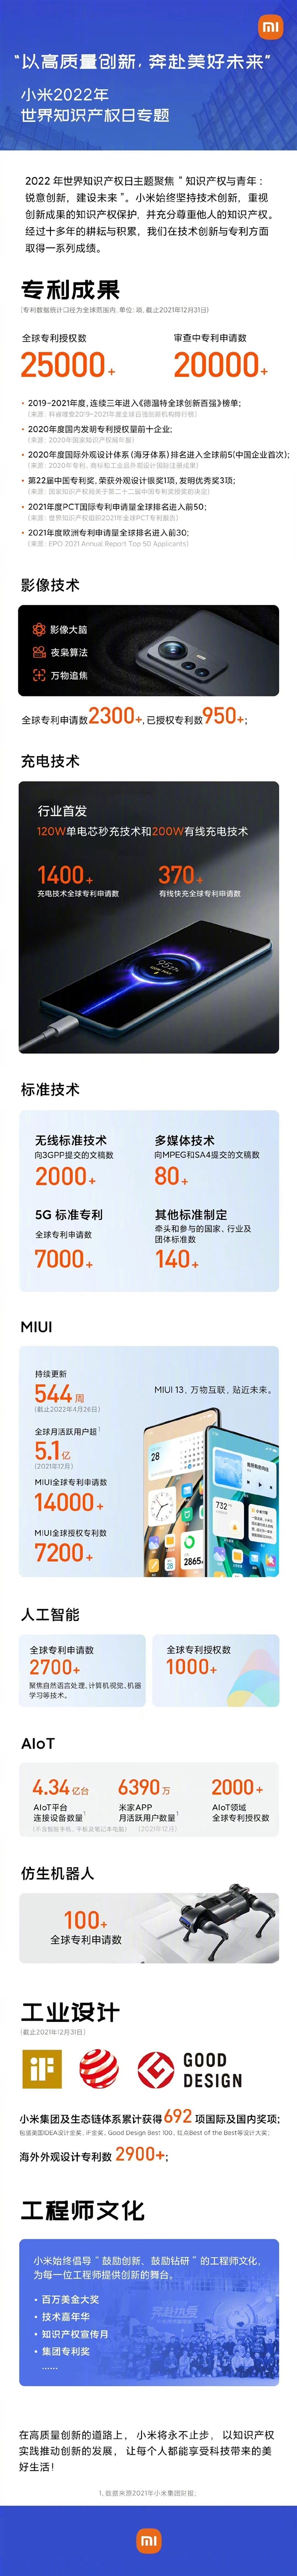 雷军晒成绩单：小米已获得全球授权专利2.5万件 还有2万件在审查